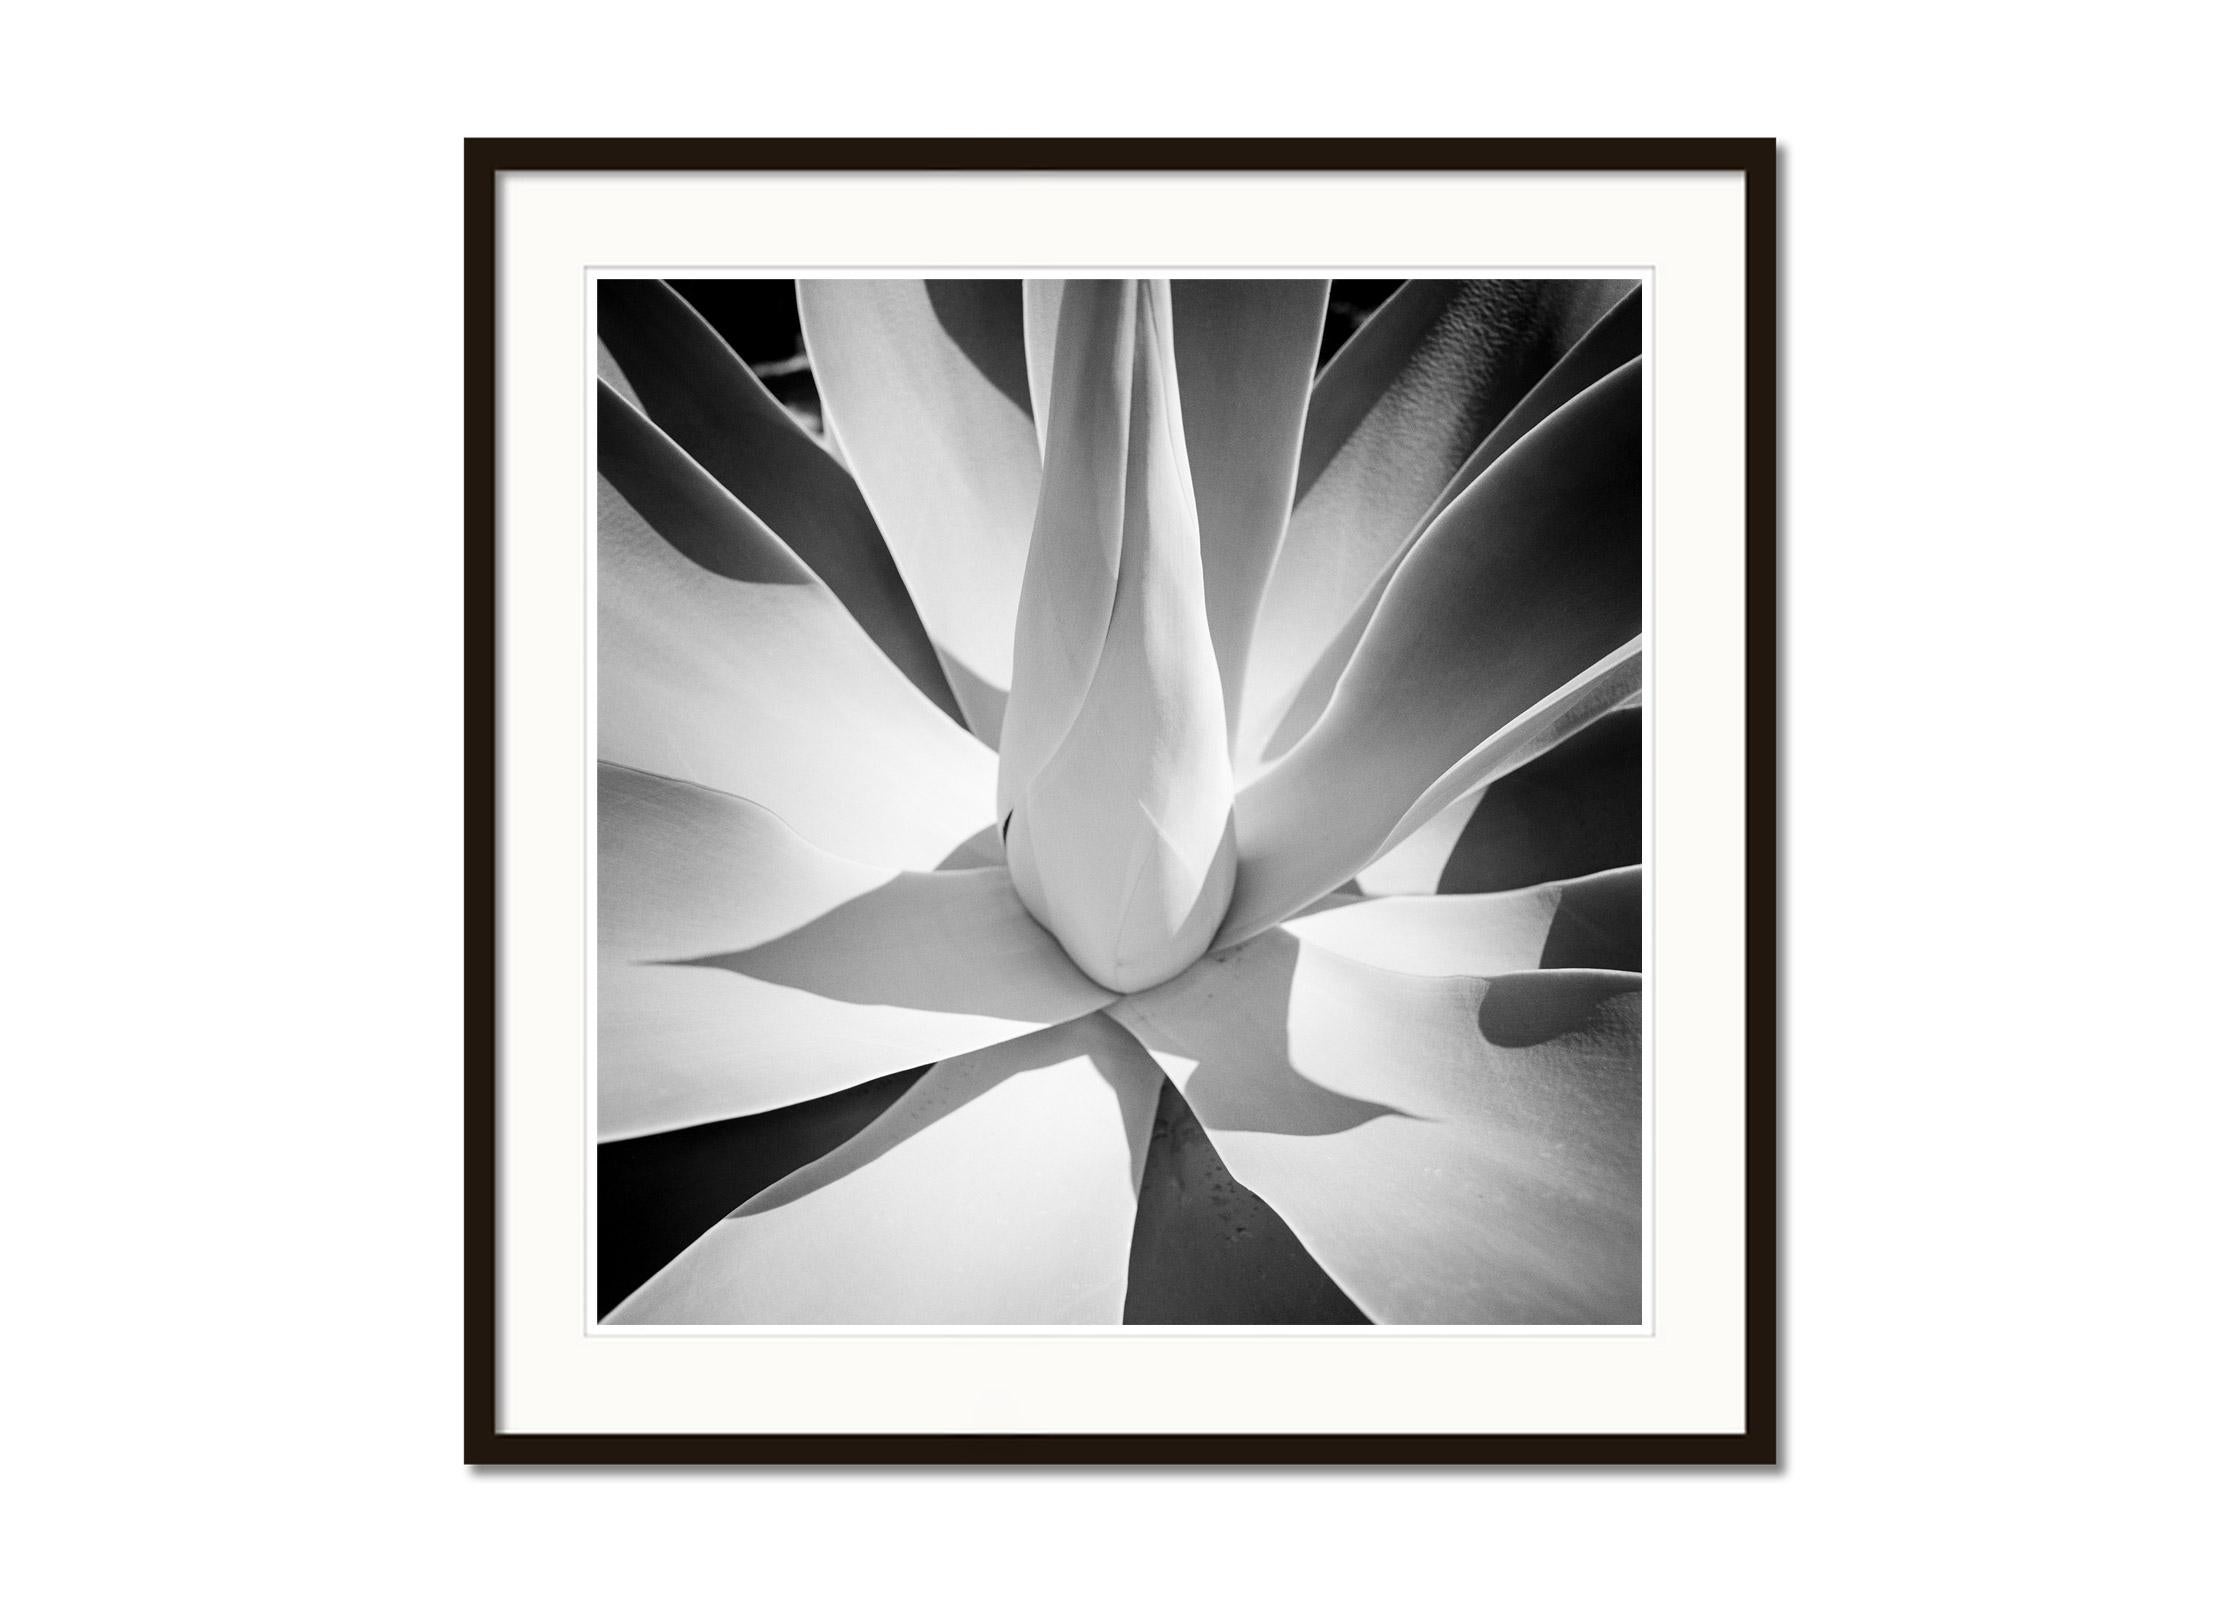 Blaue Agave, Arizona, USA, abstrakte Schwarz-Weiß-Kunstfotografie, Landschaft (Grau), Black and White Photograph, von Gerald Berghammer, Ina Forstinger